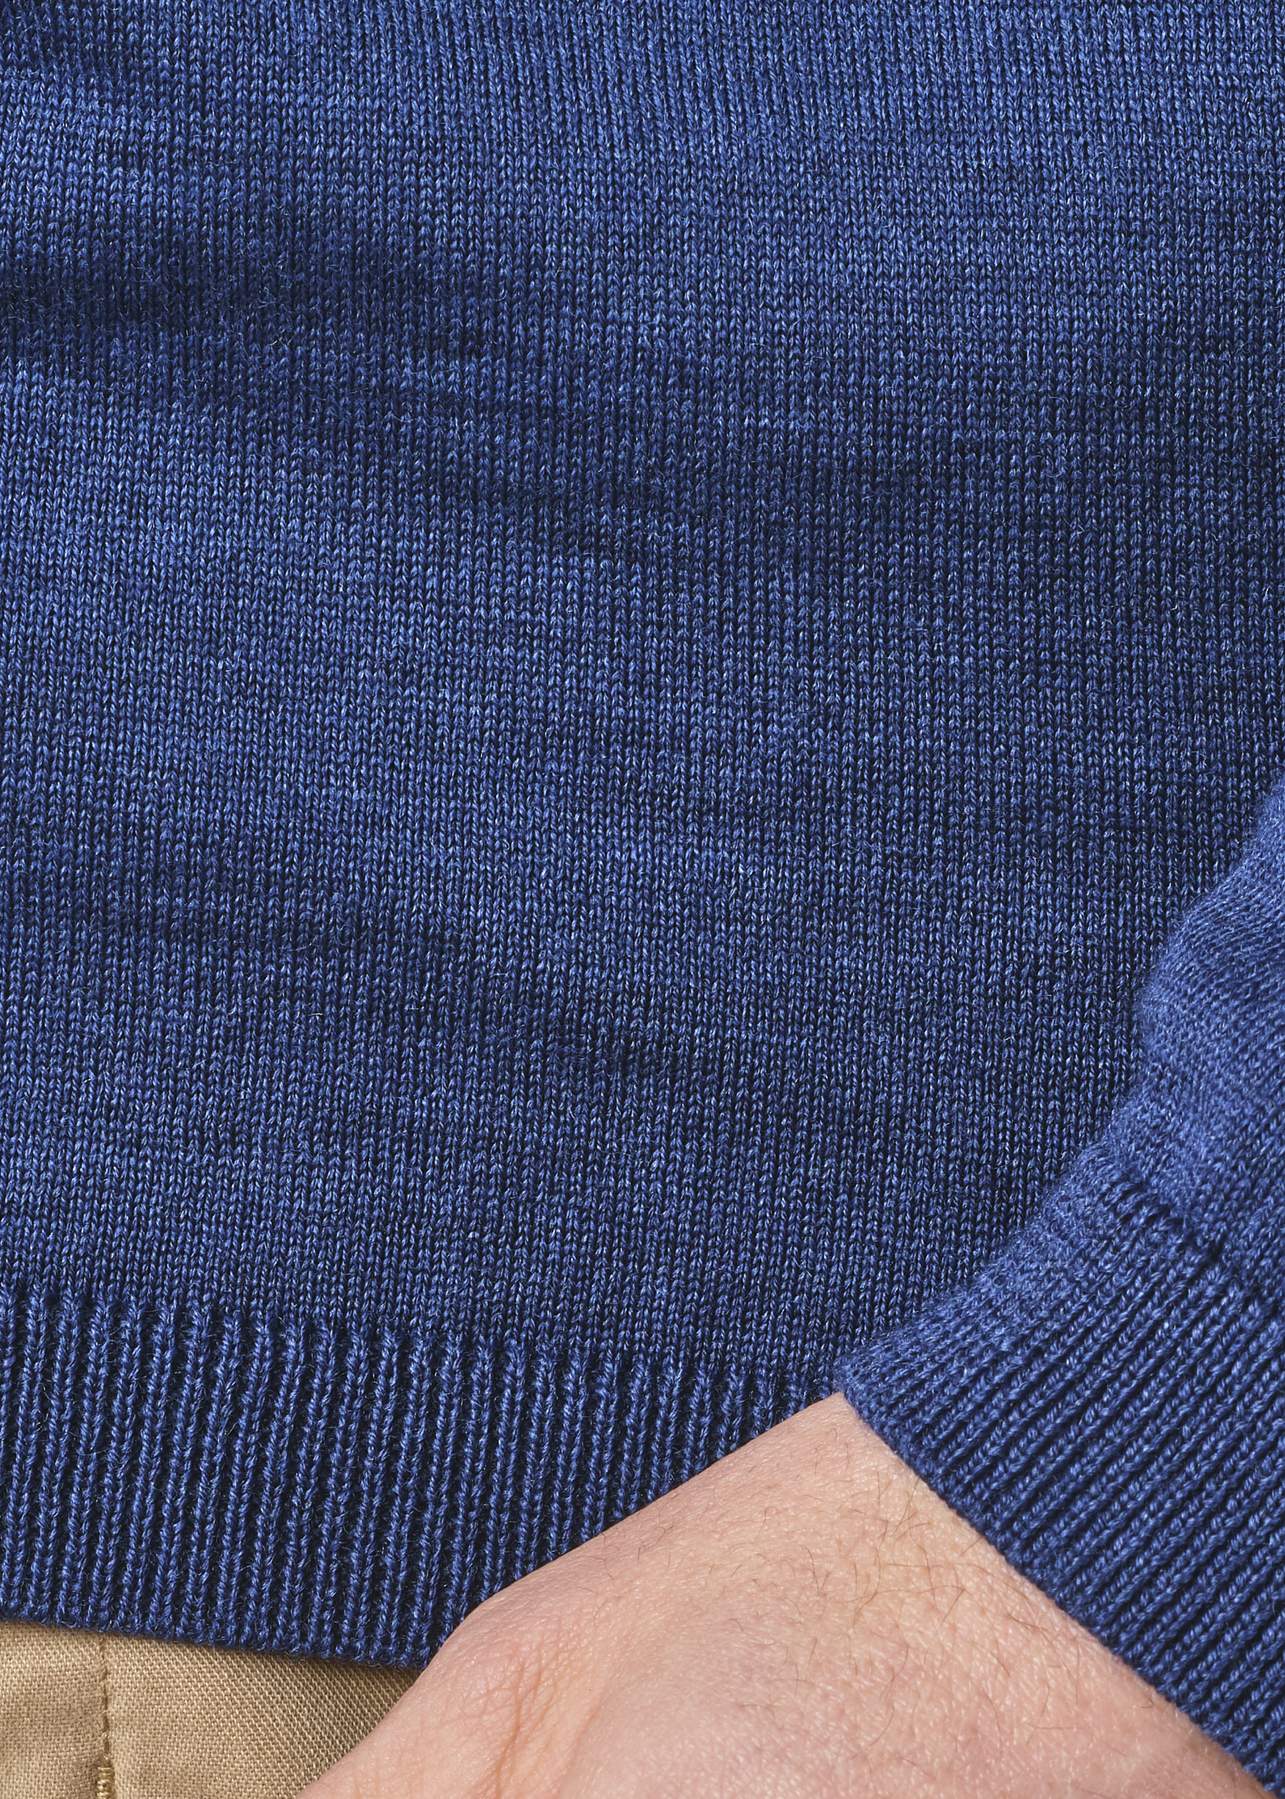 Klitmøller  Mens basic merino knit sweater / men